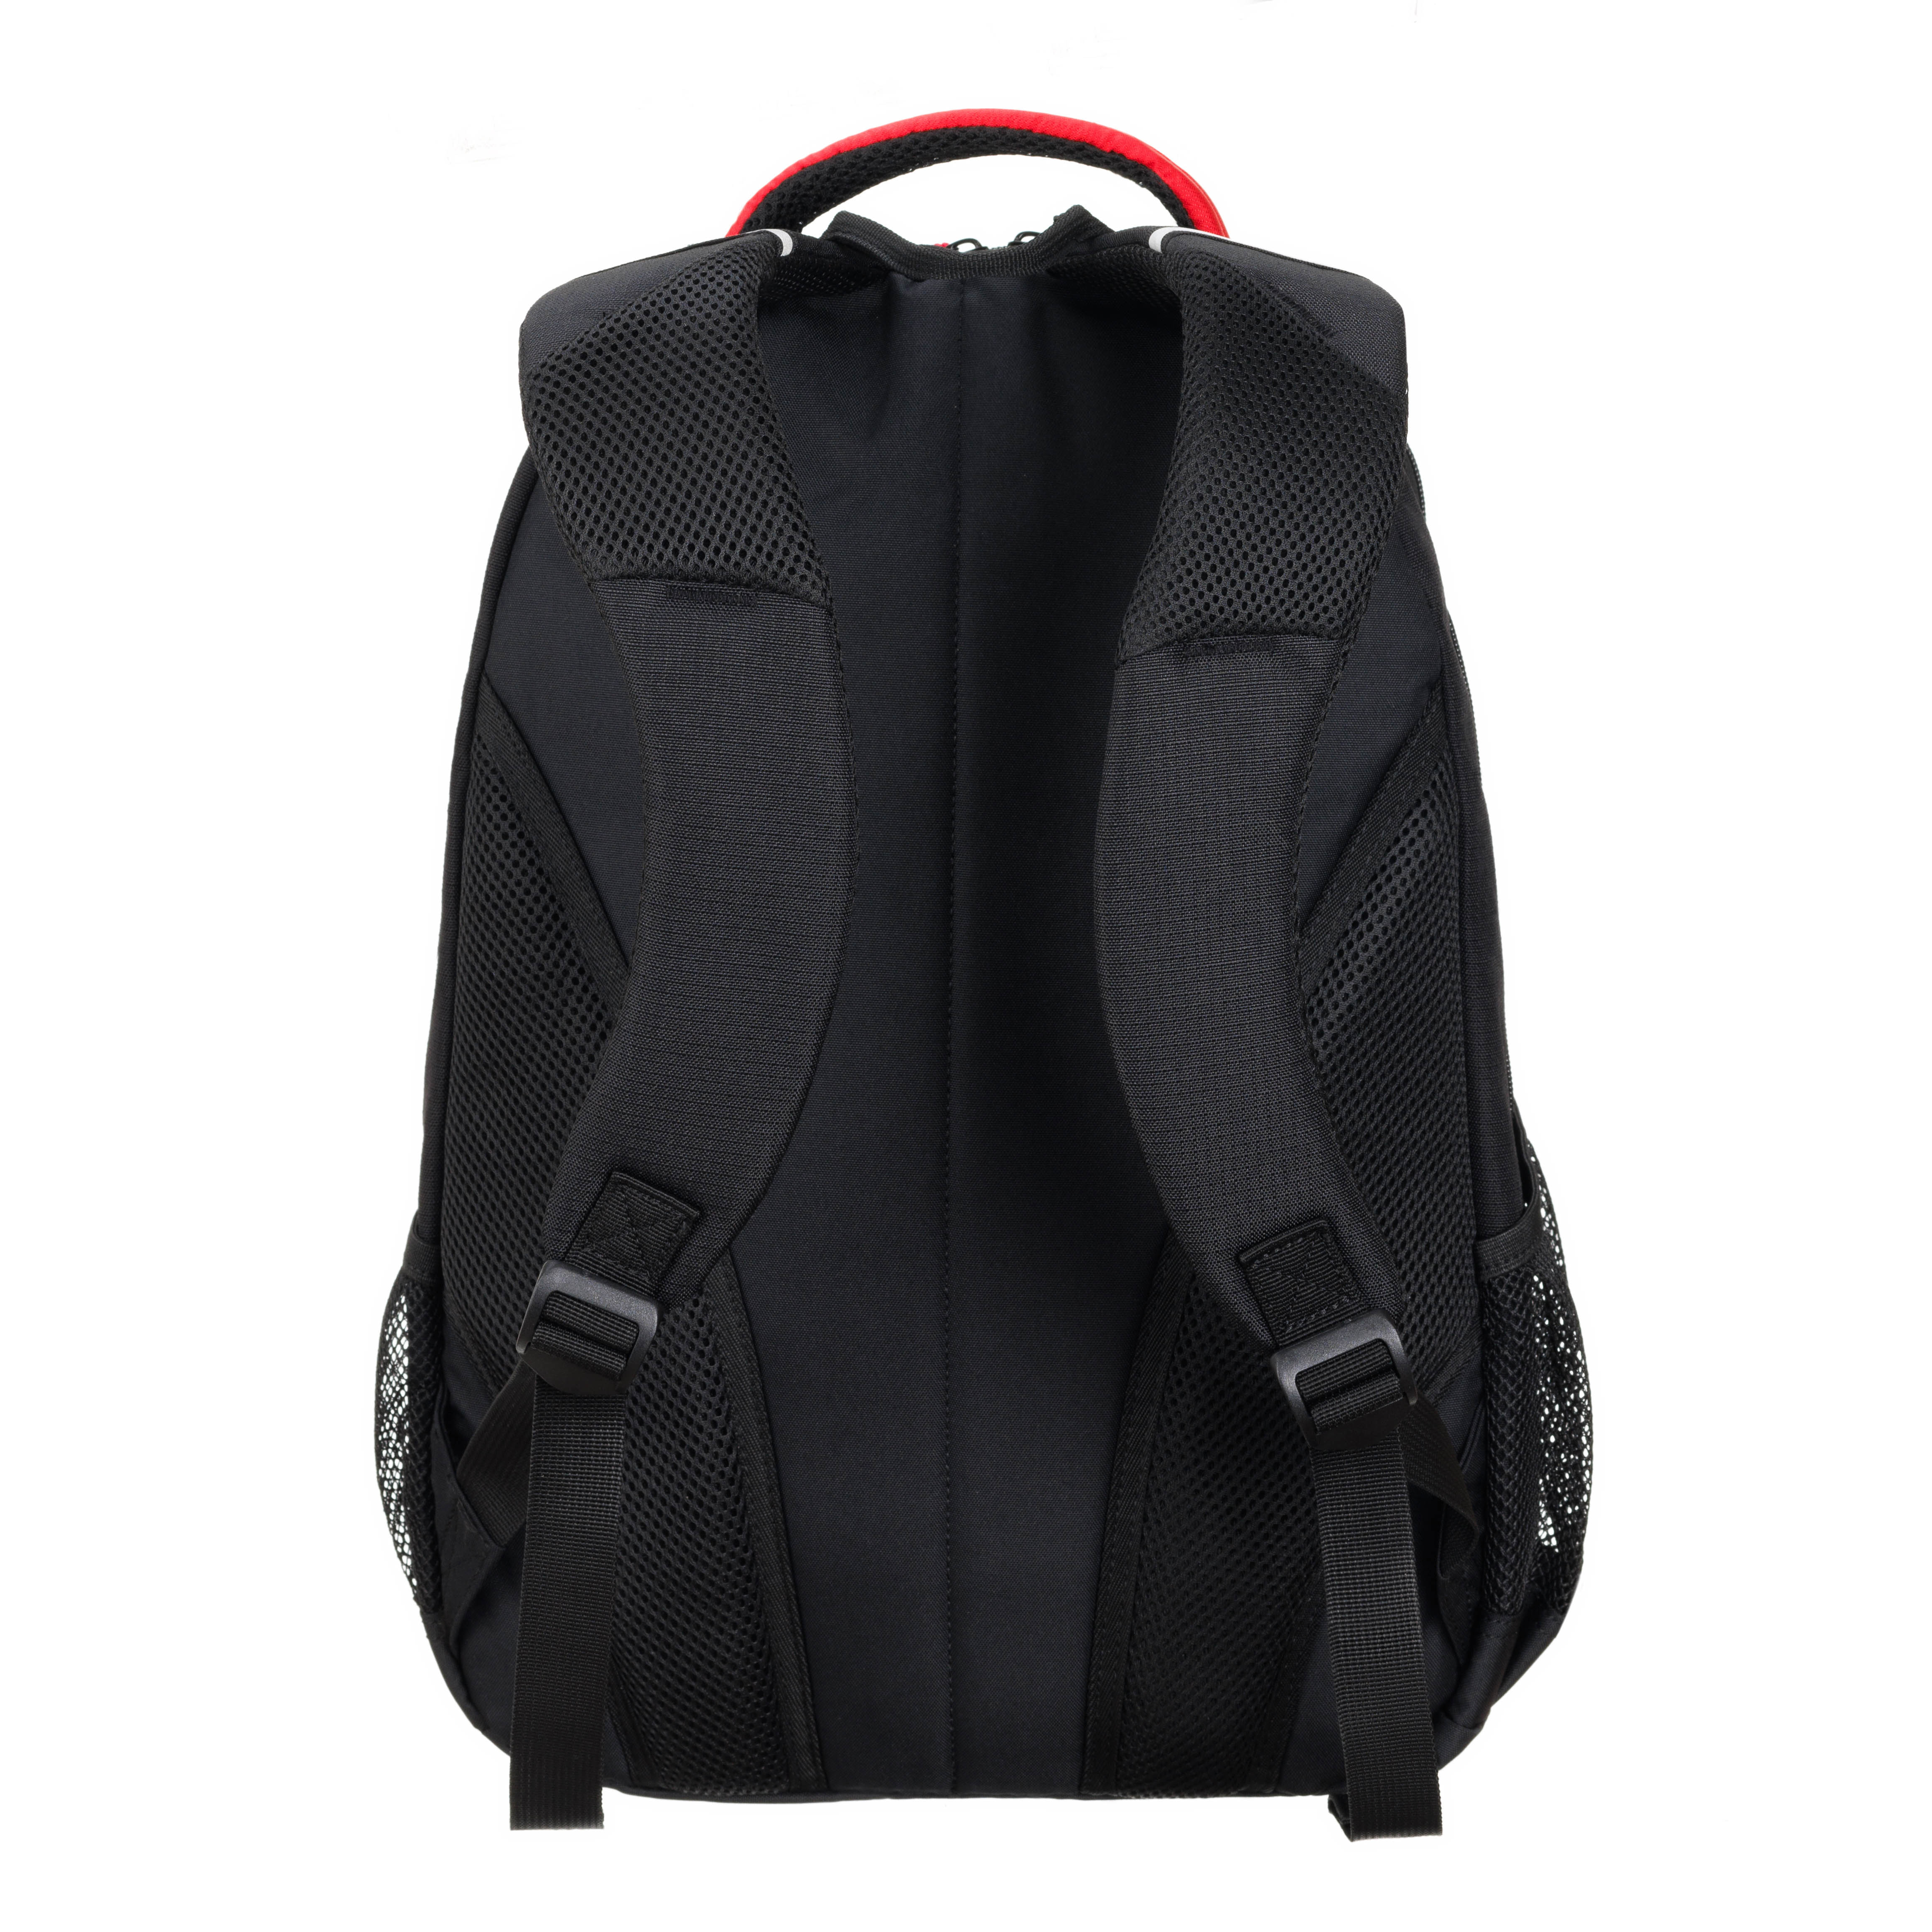 Рюкзак TORBER ROCKIT с отделением для ноутбука 15 дюймов чёрный красный - фото 4